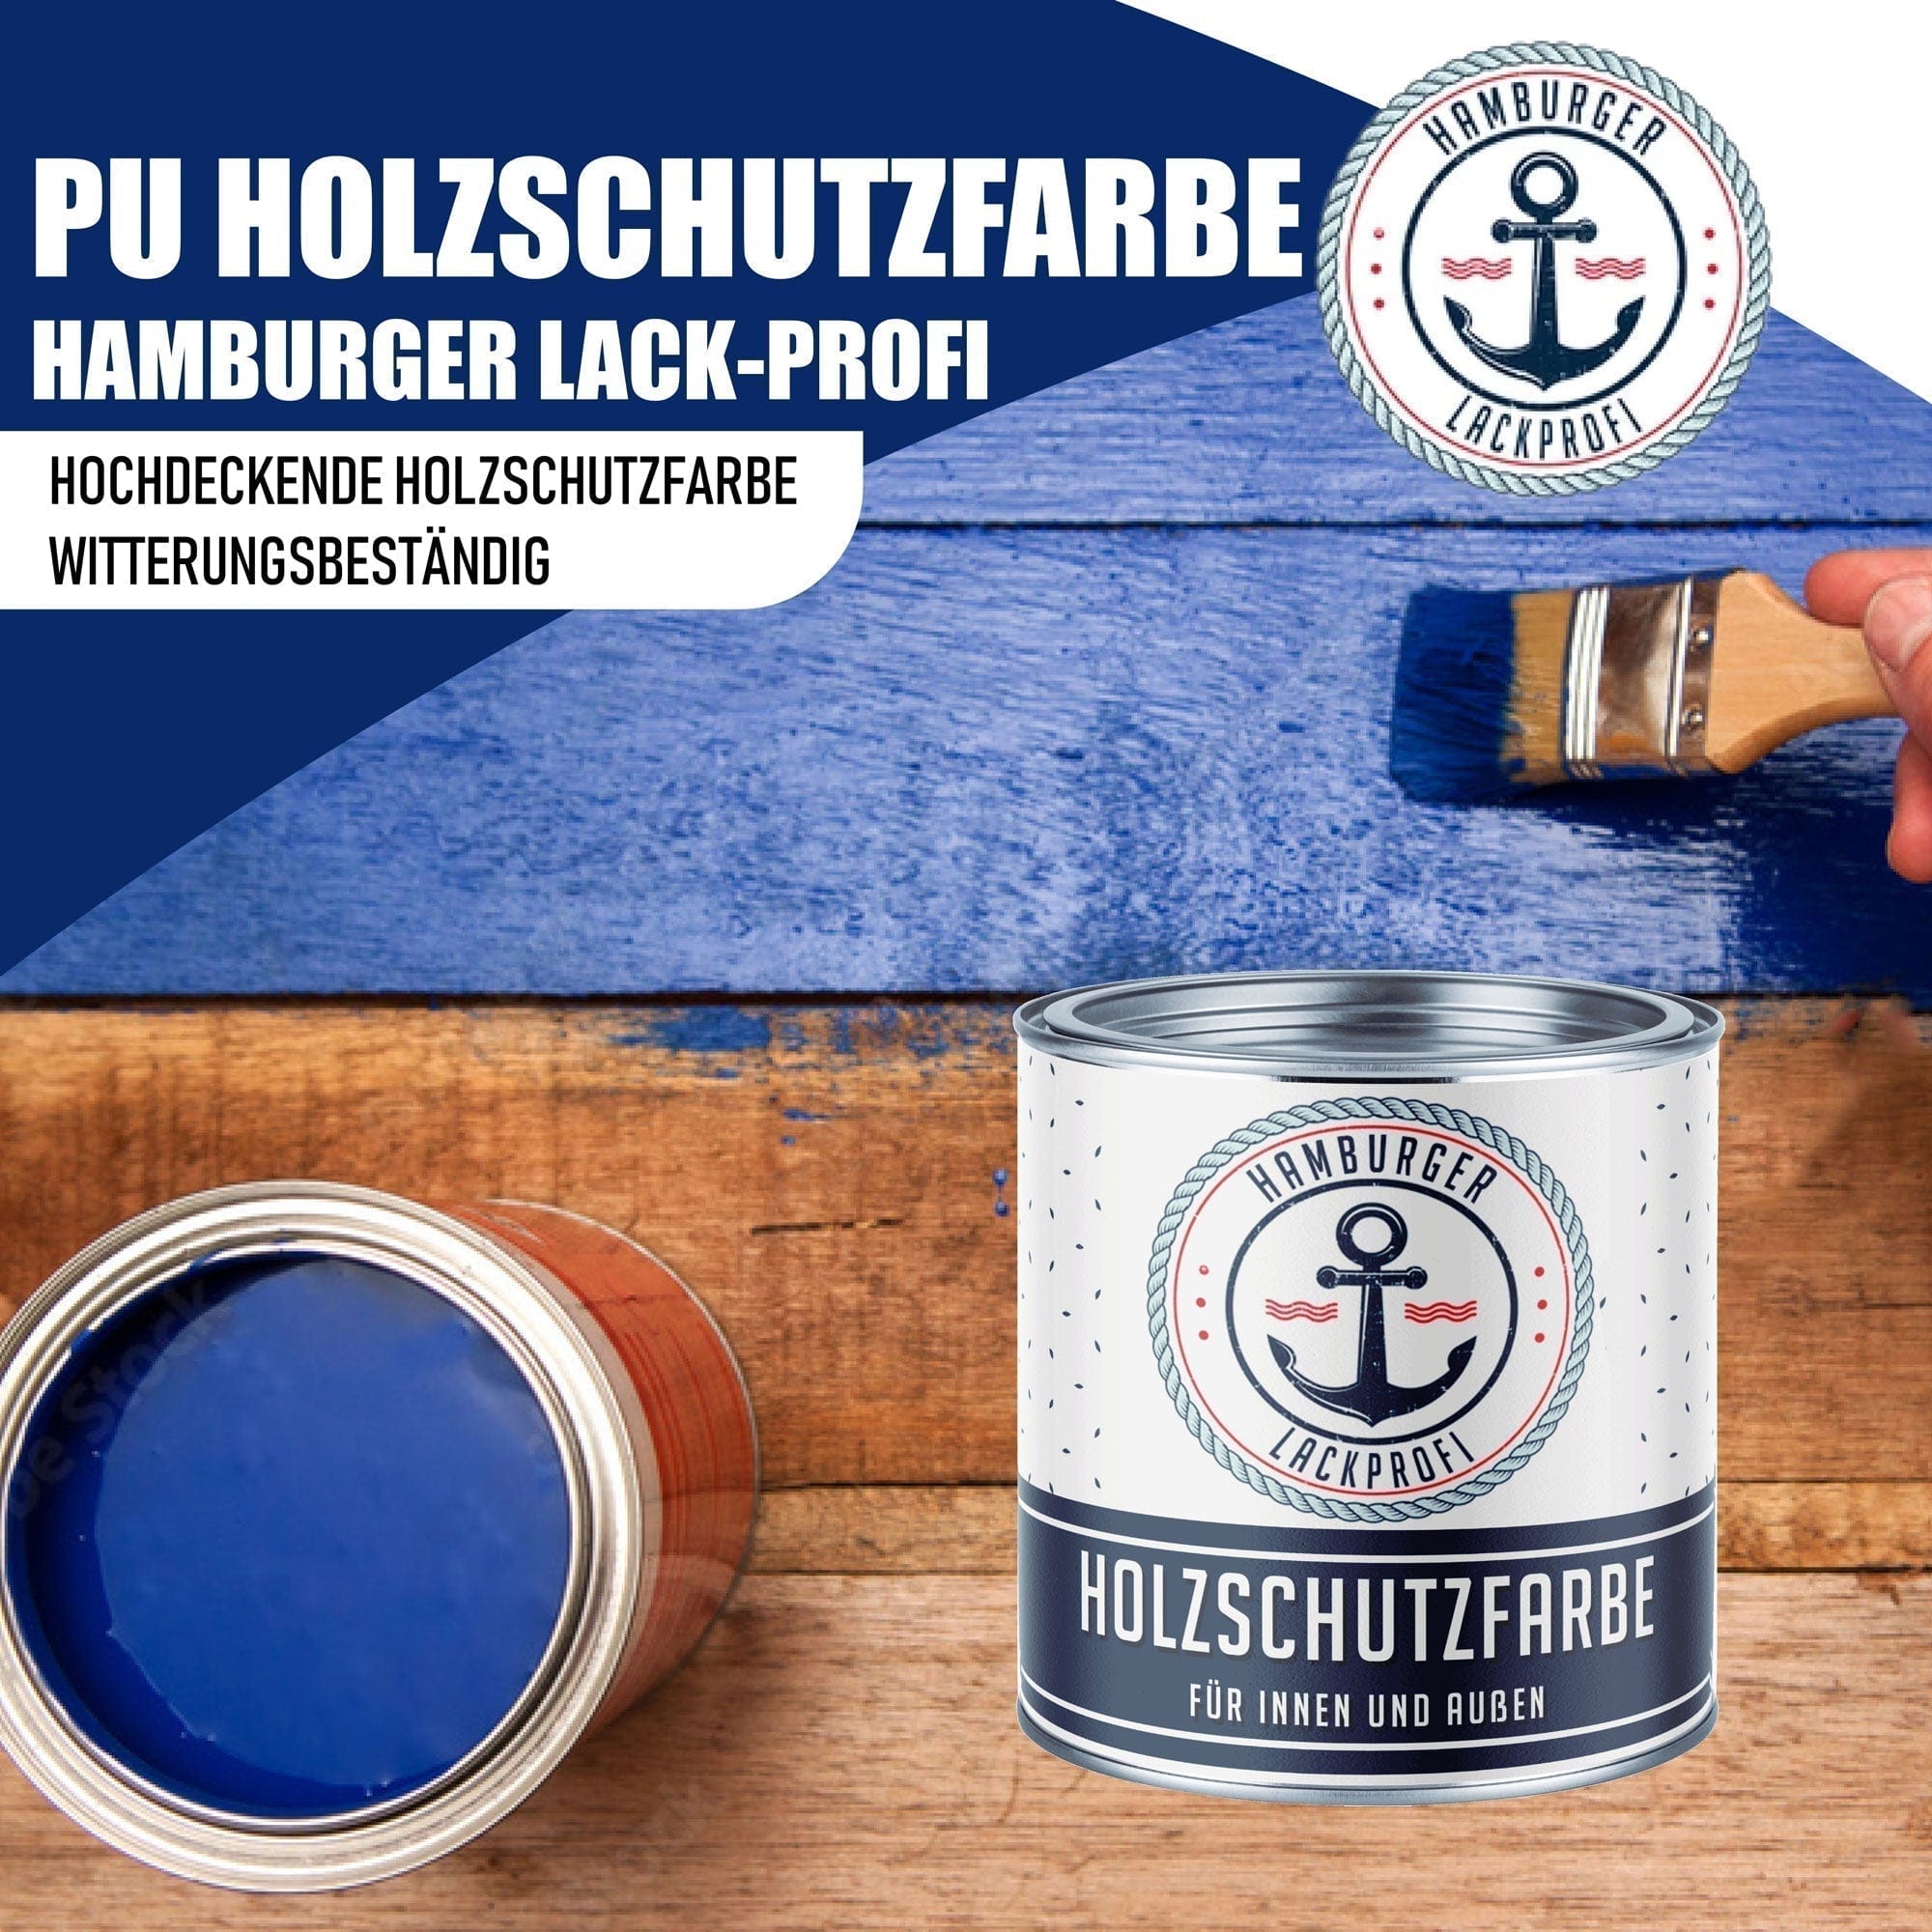 Hamburger Lack-Profi Lacke & Beschichtungen PU Holzschutzfarbe RAL 3028 Reinrot - Wetterschutzfarbe